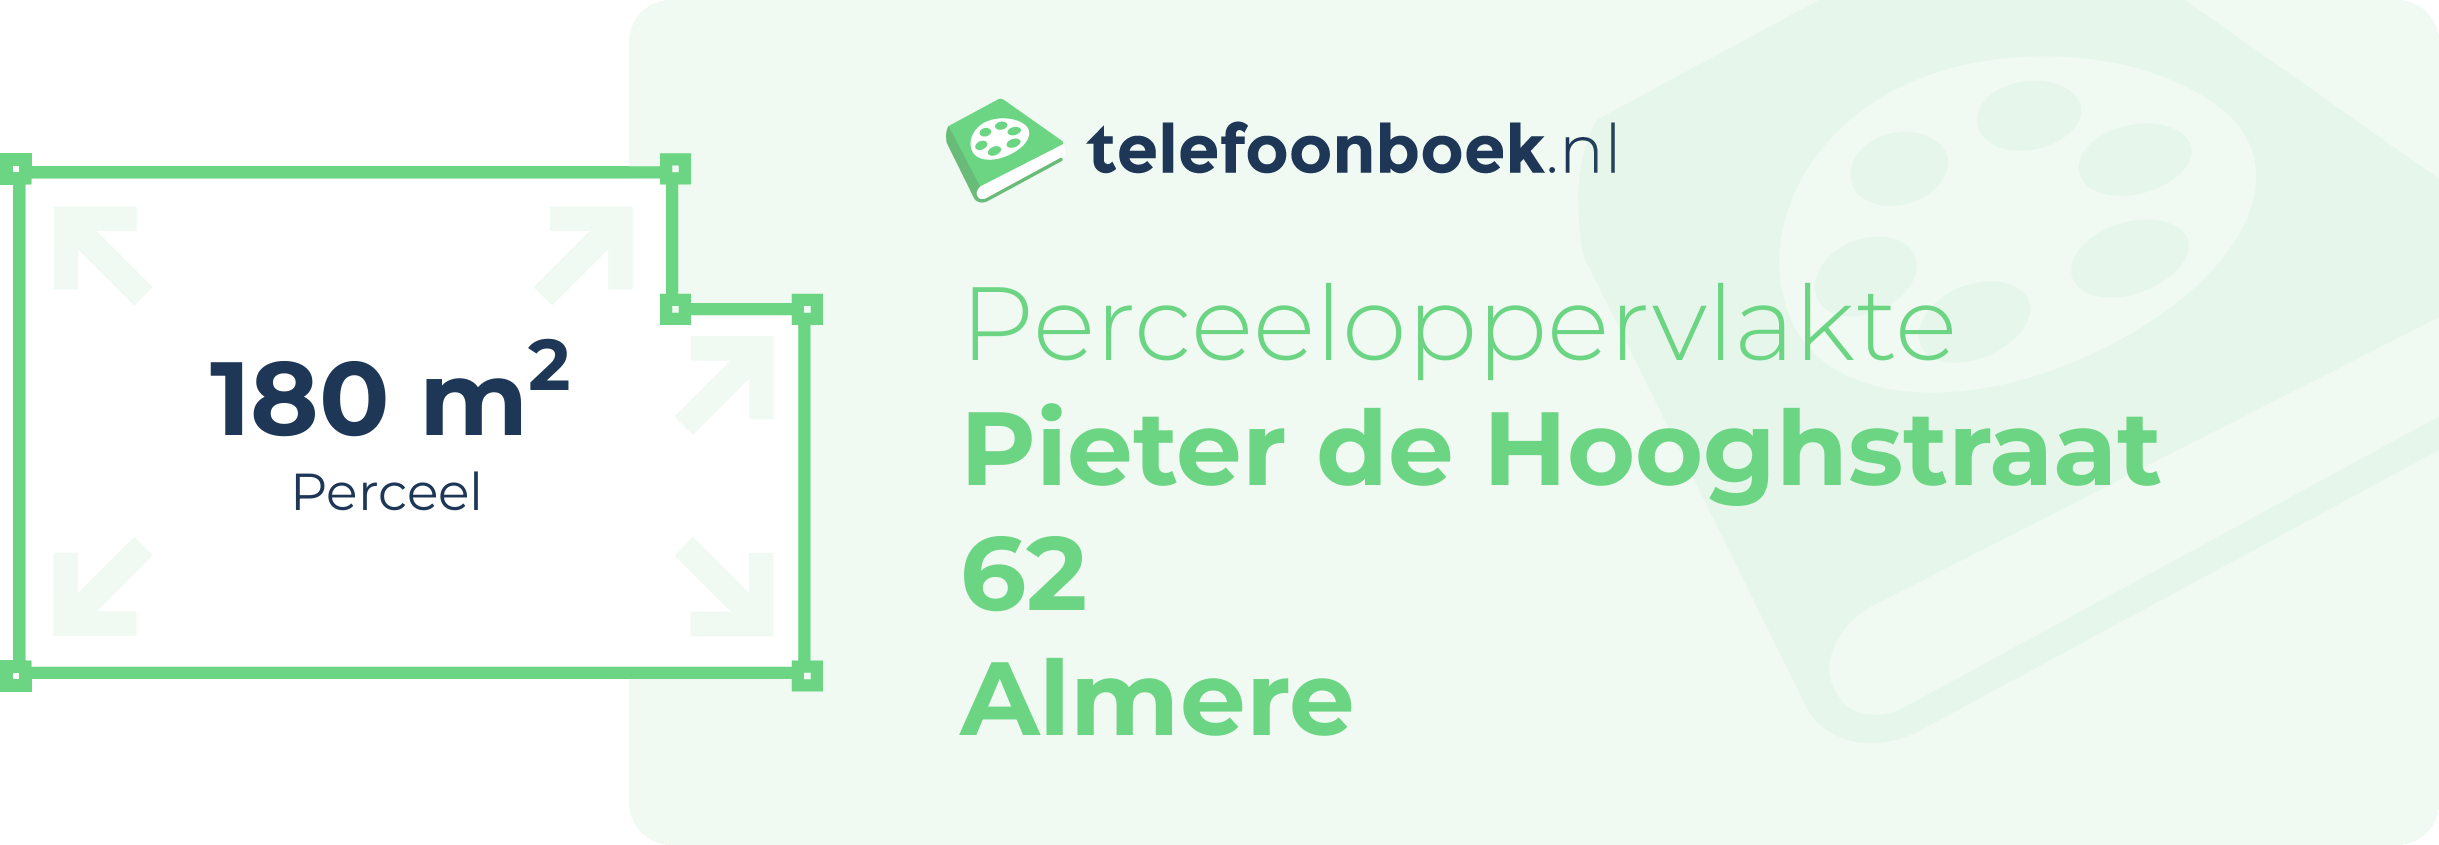 Perceeloppervlakte Pieter De Hooghstraat 62 Almere